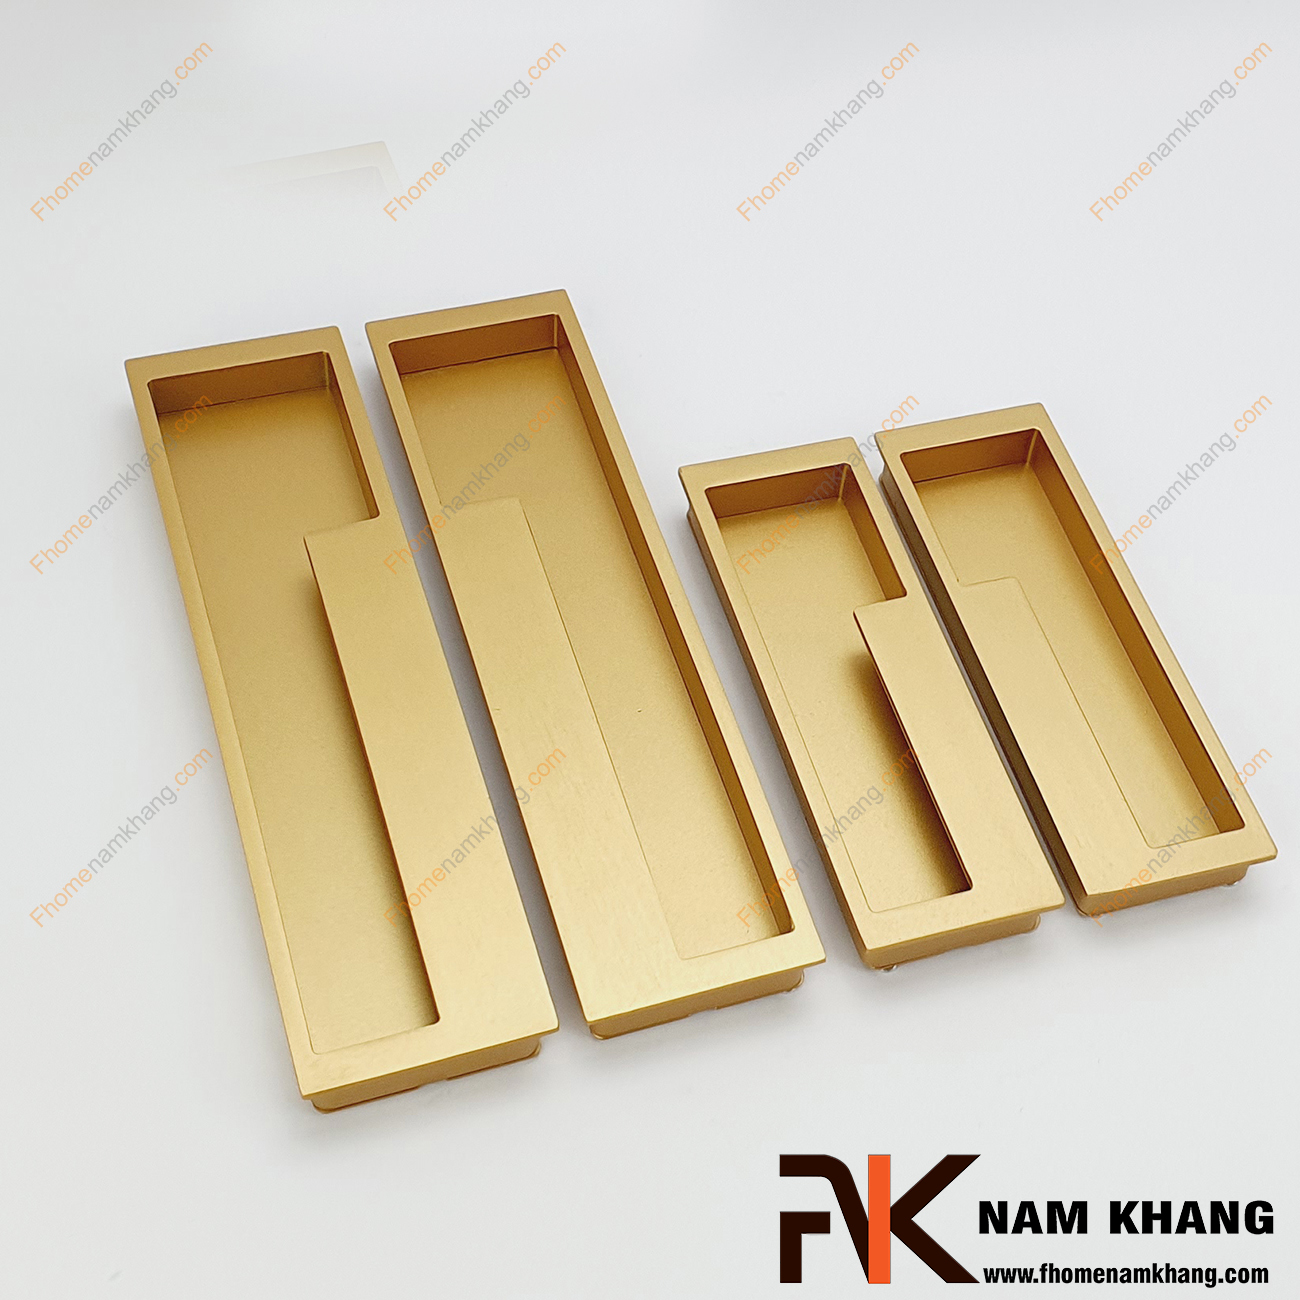 Tay nắm âm tủ màu vàng mờ NK438-192VM là loại tay nắm chuyên dùng cho các loại tủ đặt ở những nơi có không gian hạn chế hoặc dùng để nâng cao tính thẫm mỹ của sản phẩm